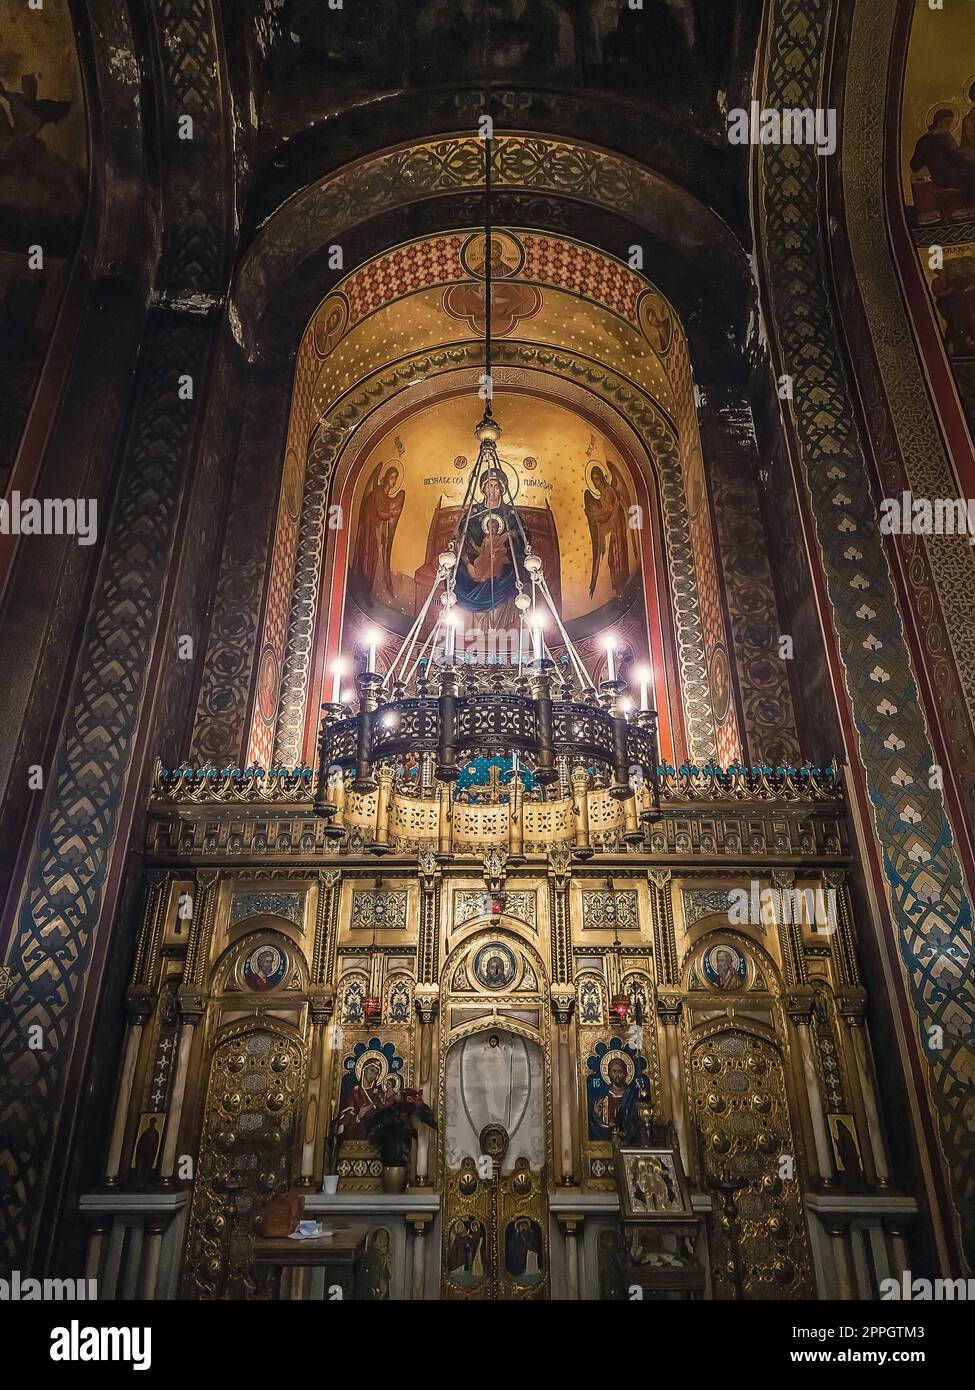 Dettagli interni del monastero di Curtea de Arges. L'altare e le pareti ornate con icone dipinte e un lampadario dorato con luci che si sospendono al di fuori del soffitto Foto Stock